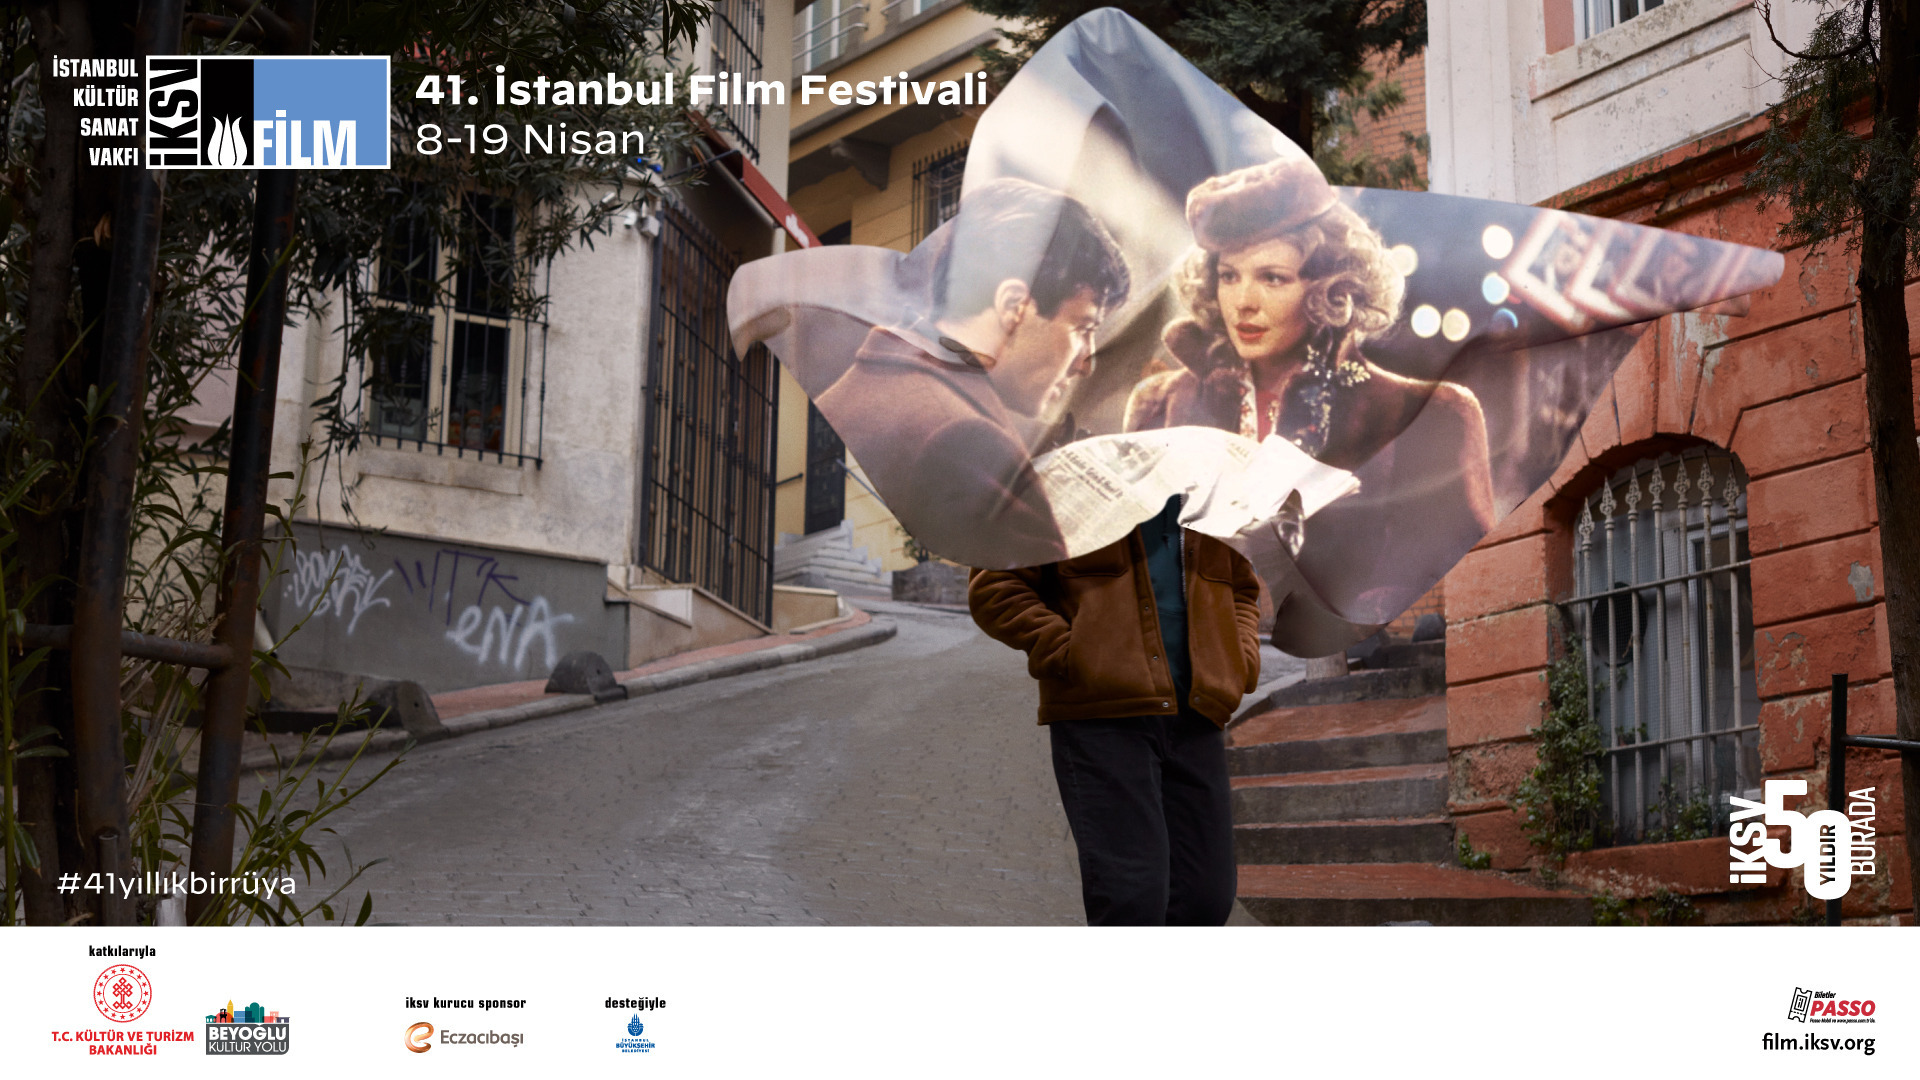 41. İstanbul Film Festivali Hakkında Tüm Bildiklerimiz